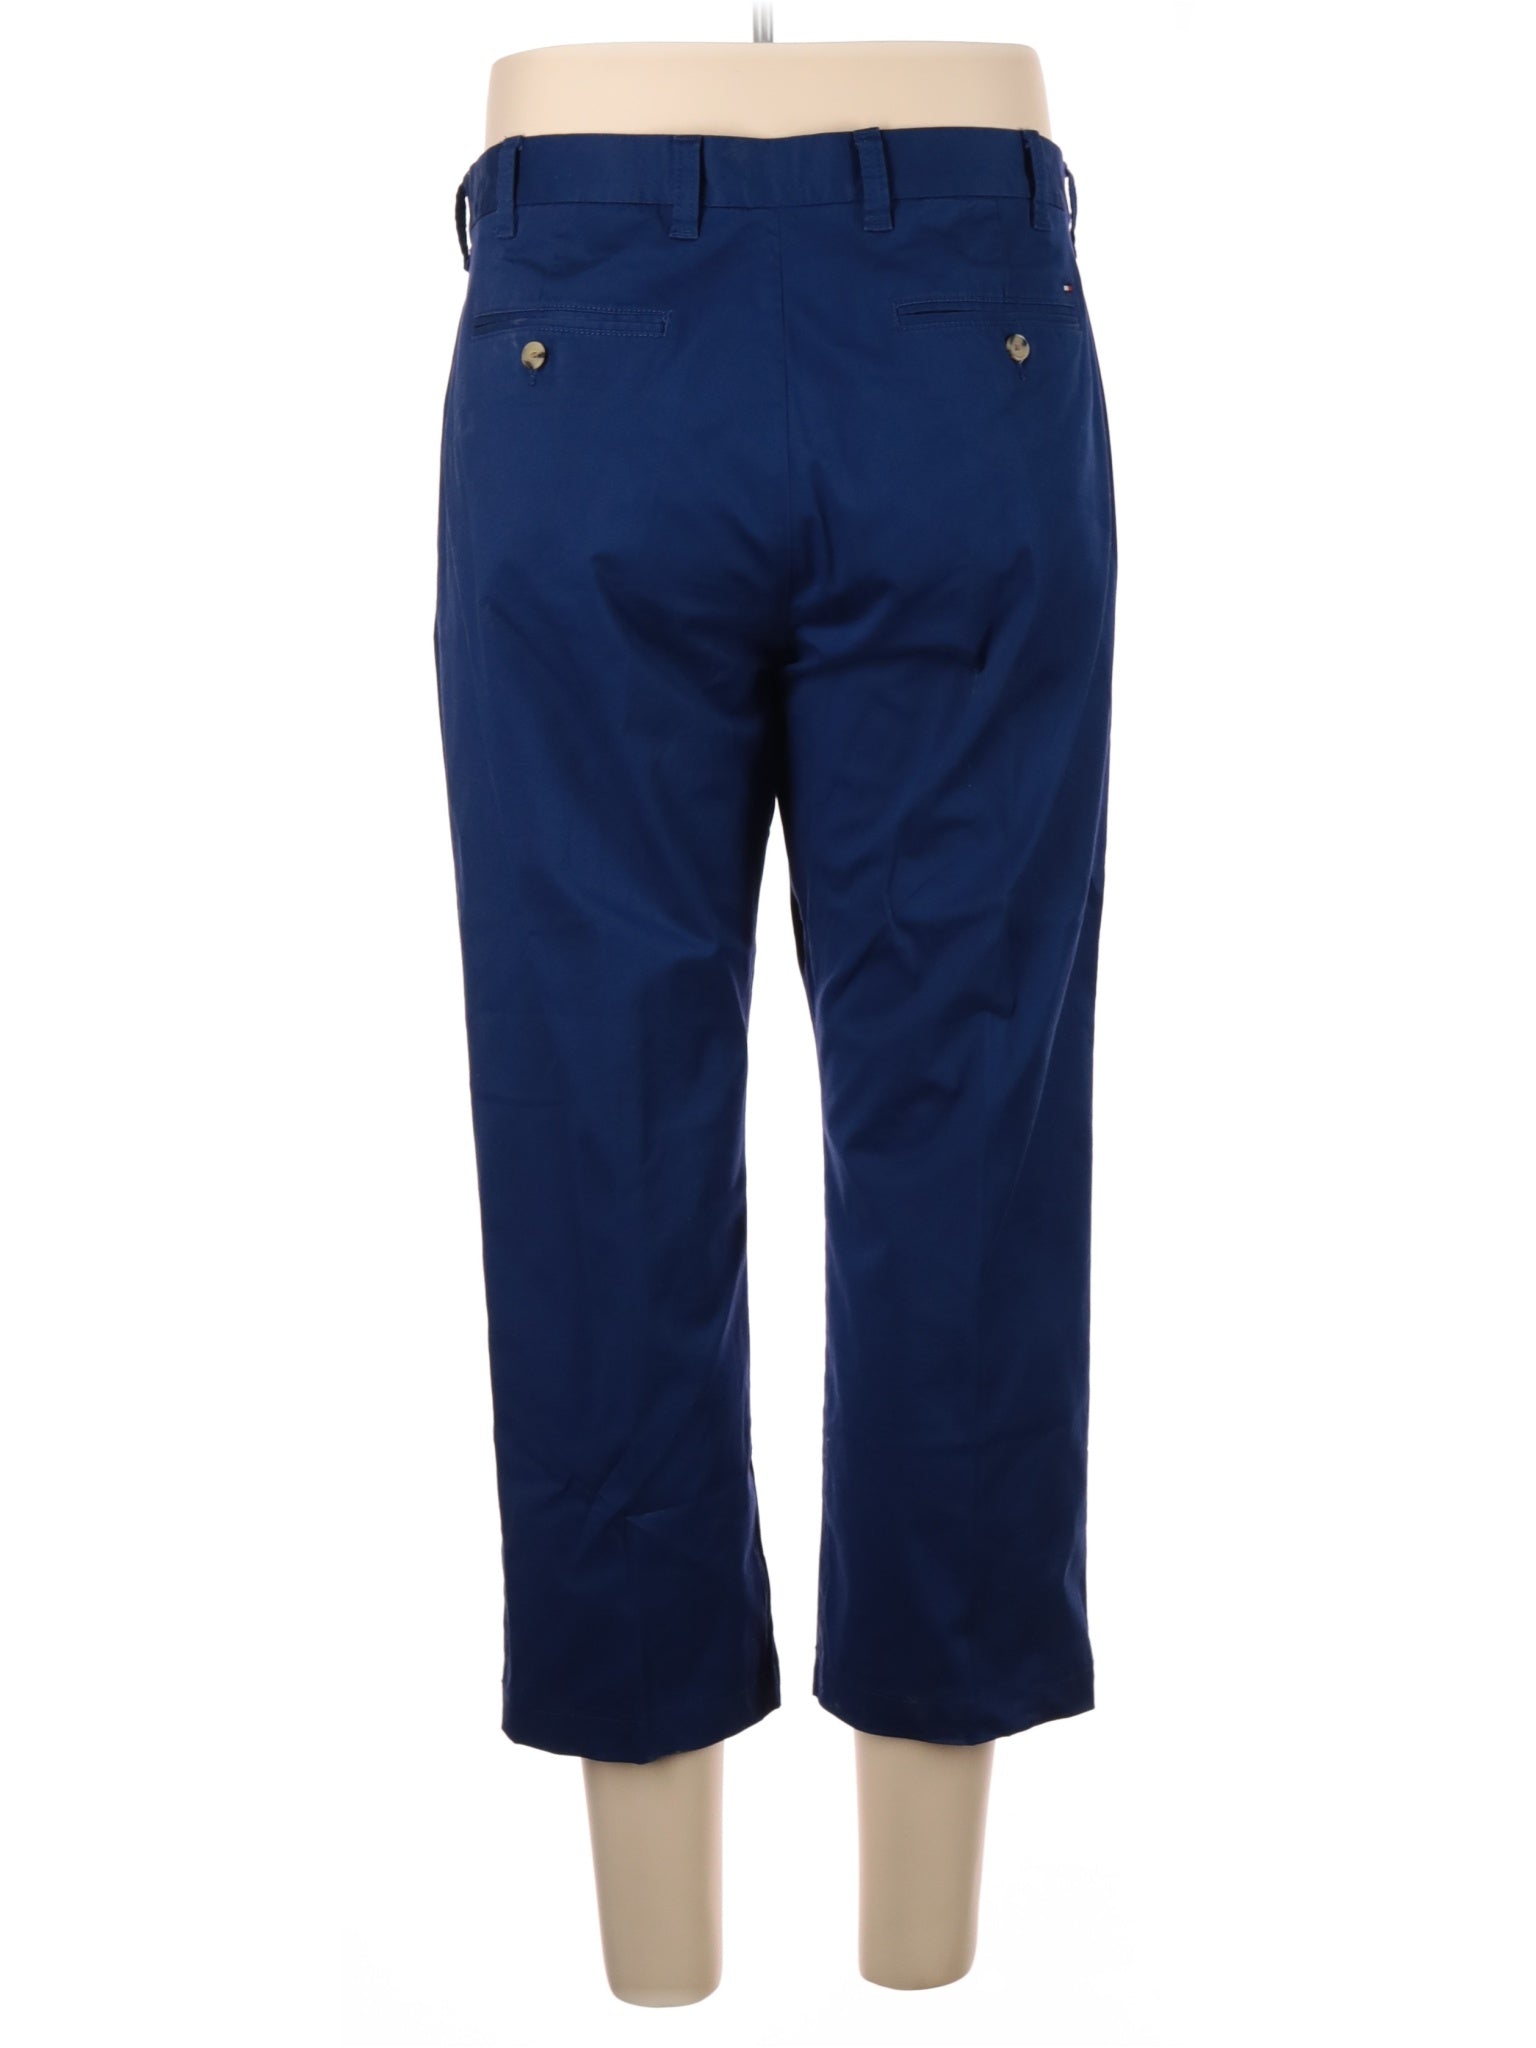 Khaki/Chino Pants size - 38 (W38 L30)